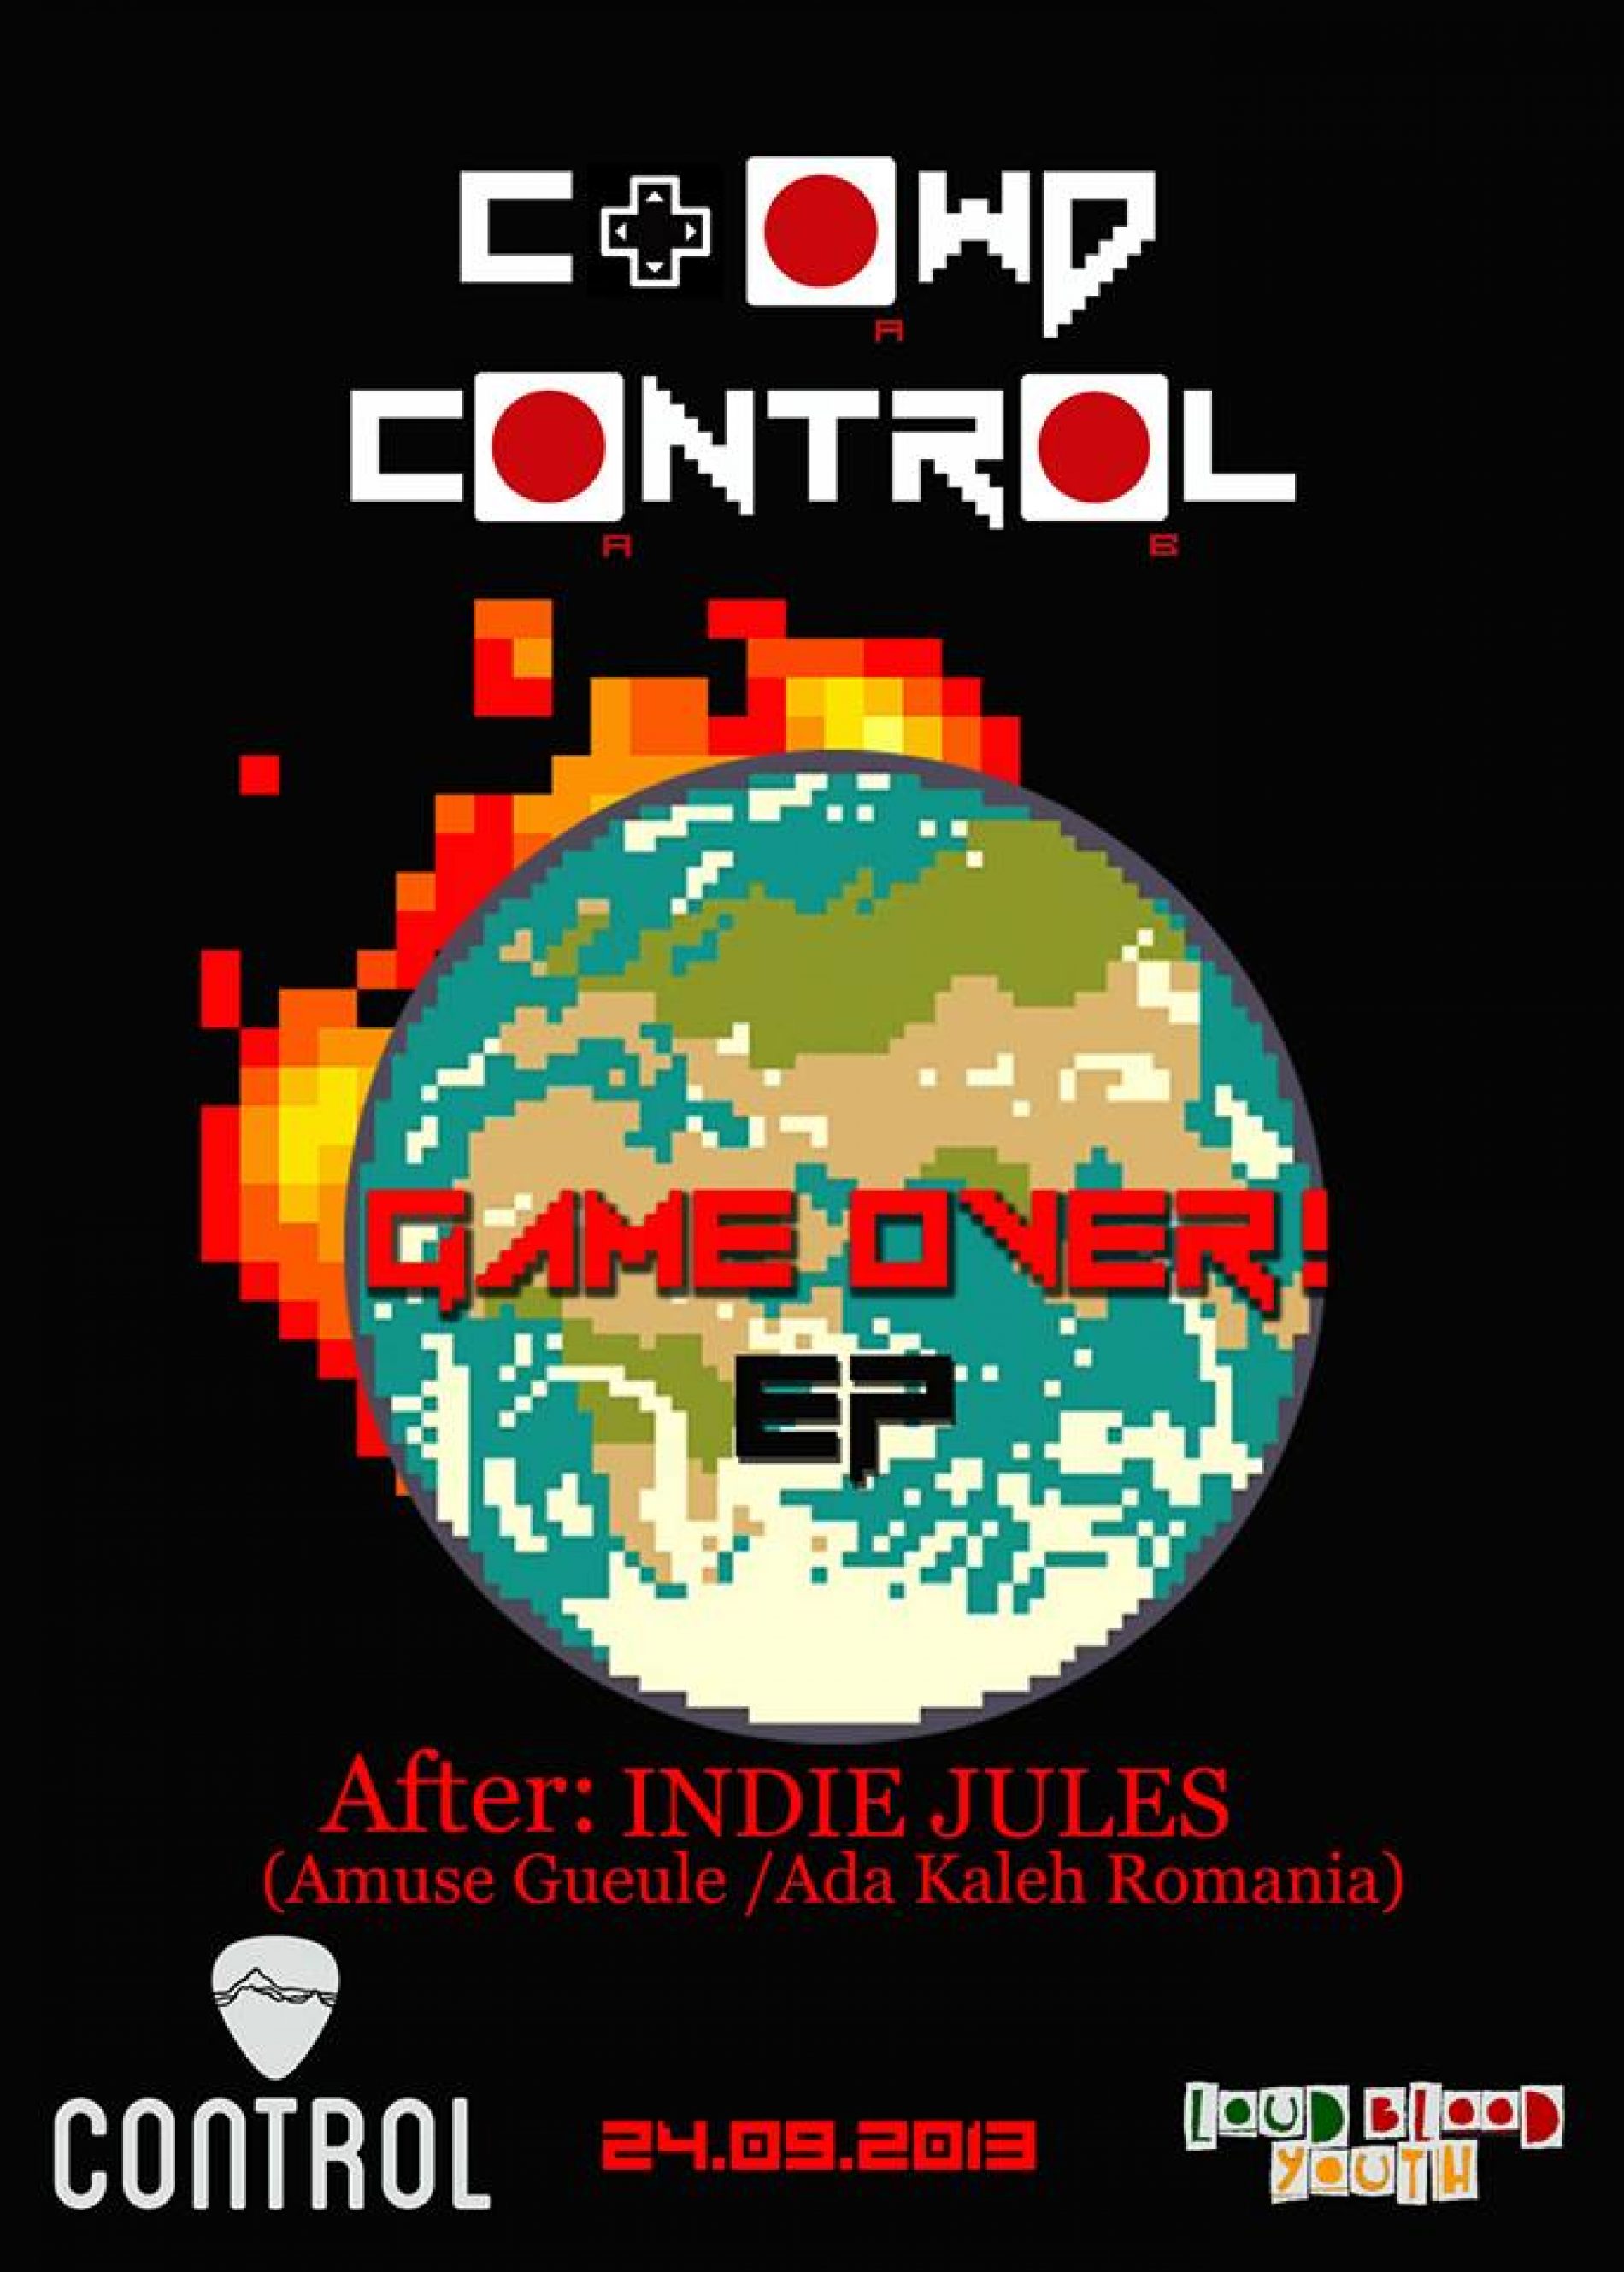 Crowd Control: Concert de lansare album in club Control